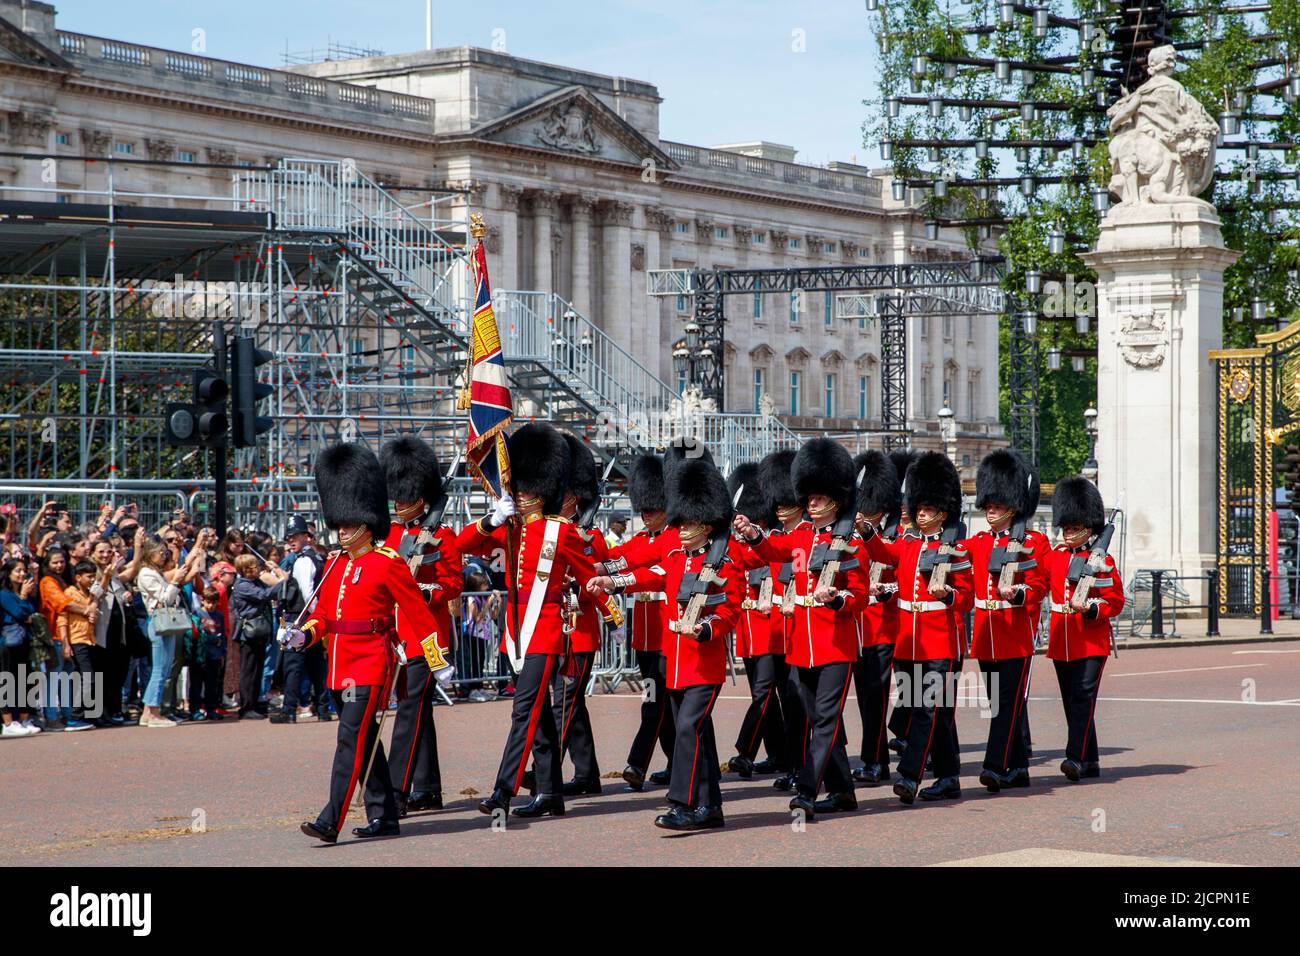 Queen’s Guard marschiert nach einem Wachwechsel am Mittwoch, den 18. Mai 2022, in London, England, Großbritannien, vom Buckingham Palace aus.Foto: David Rowland / Stockfoto